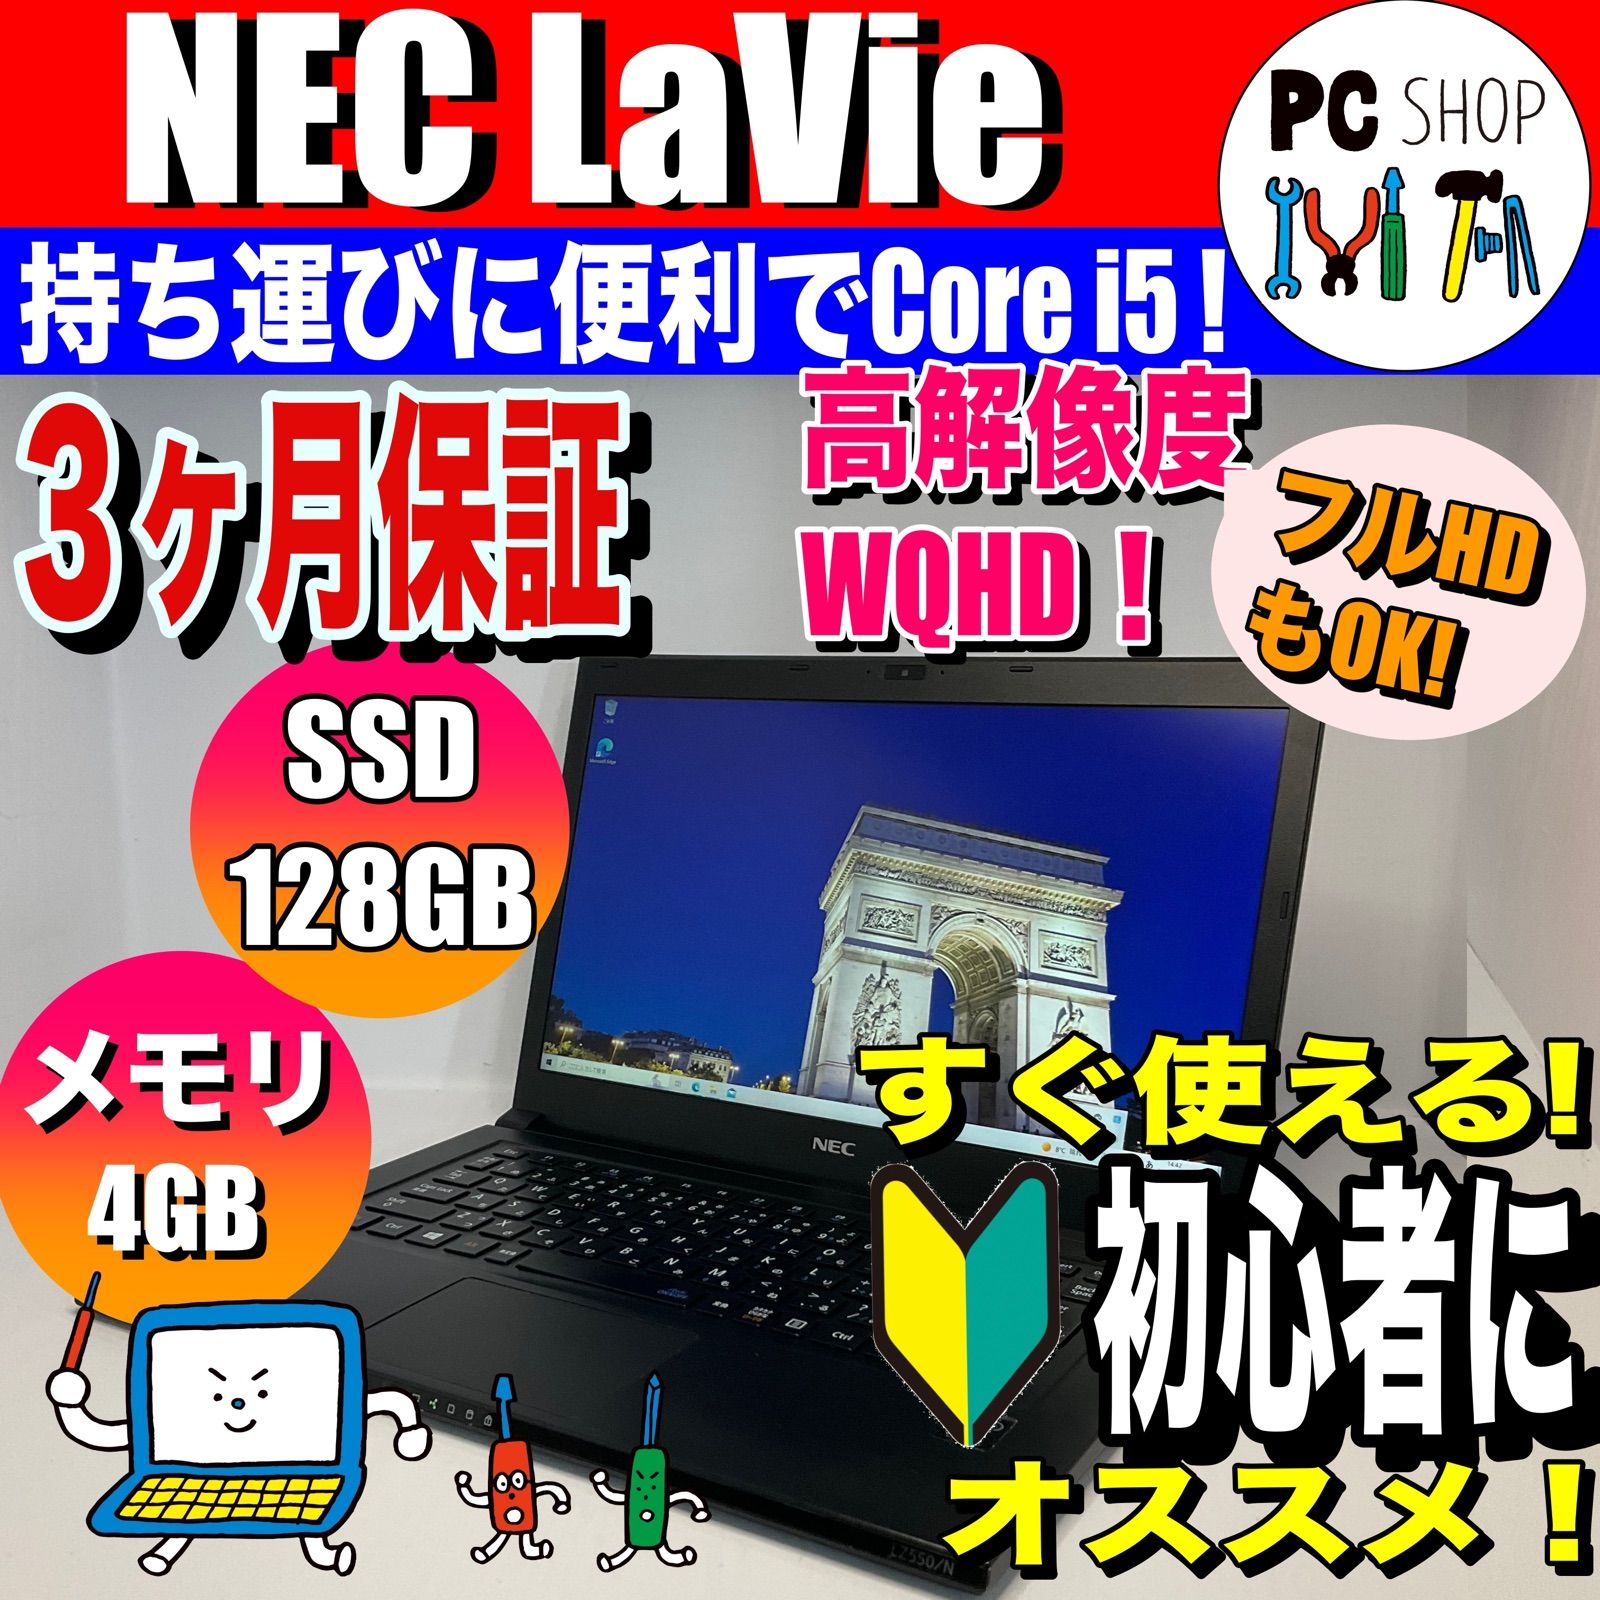 MA-010009］すぐ使える！初心者向け、NEC ノートパソコン、Core i5